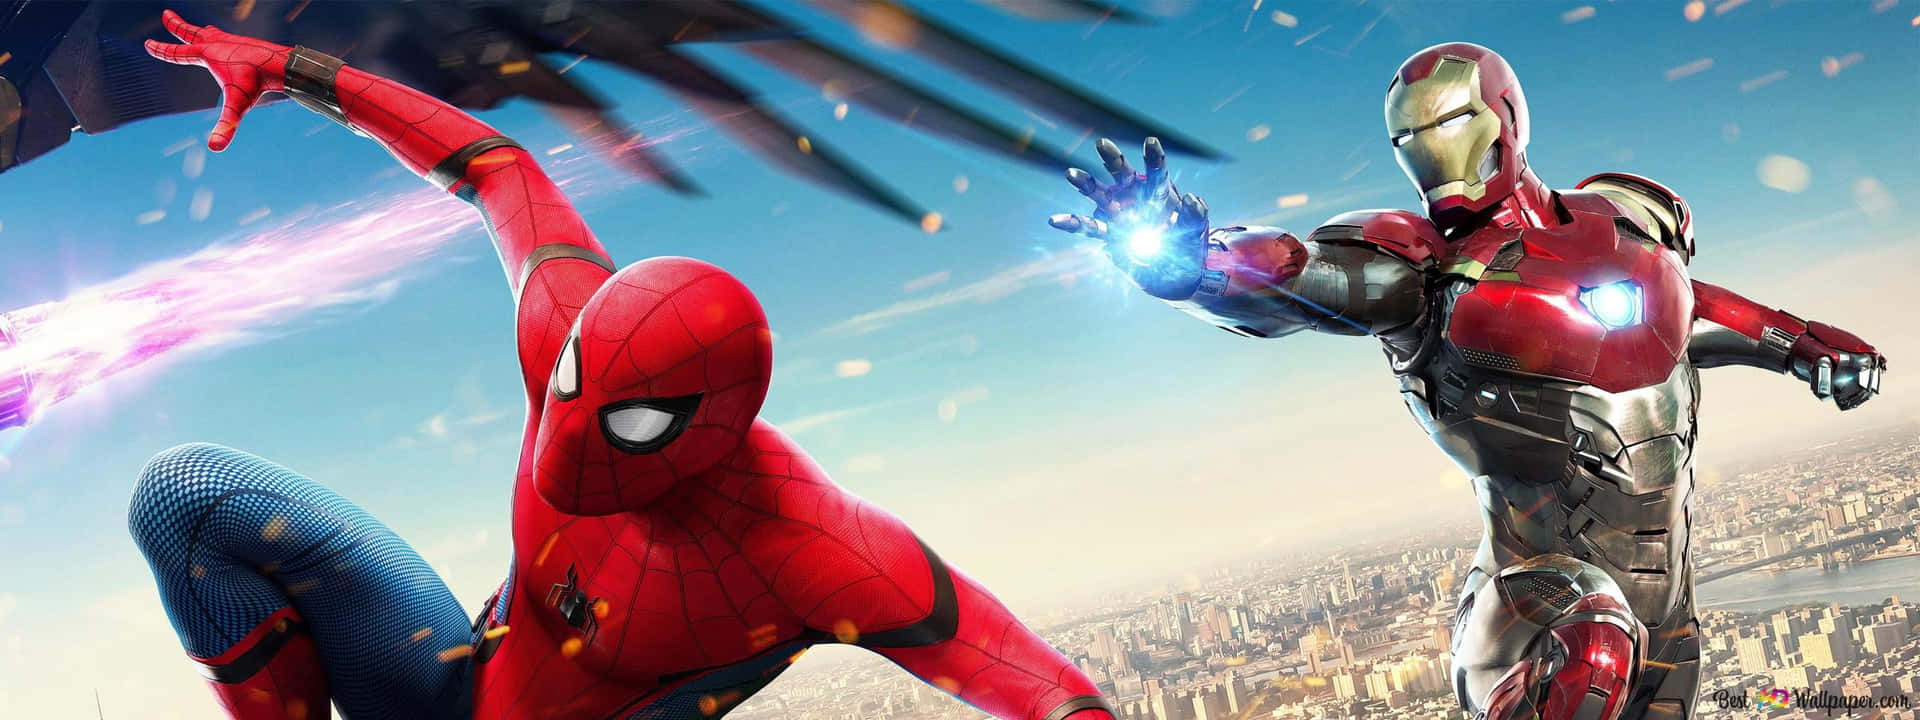 Lossuperhéroes De Marvel Spider-man Y Iron Man Se Unen Para Salvar El Día. Fondo de pantalla